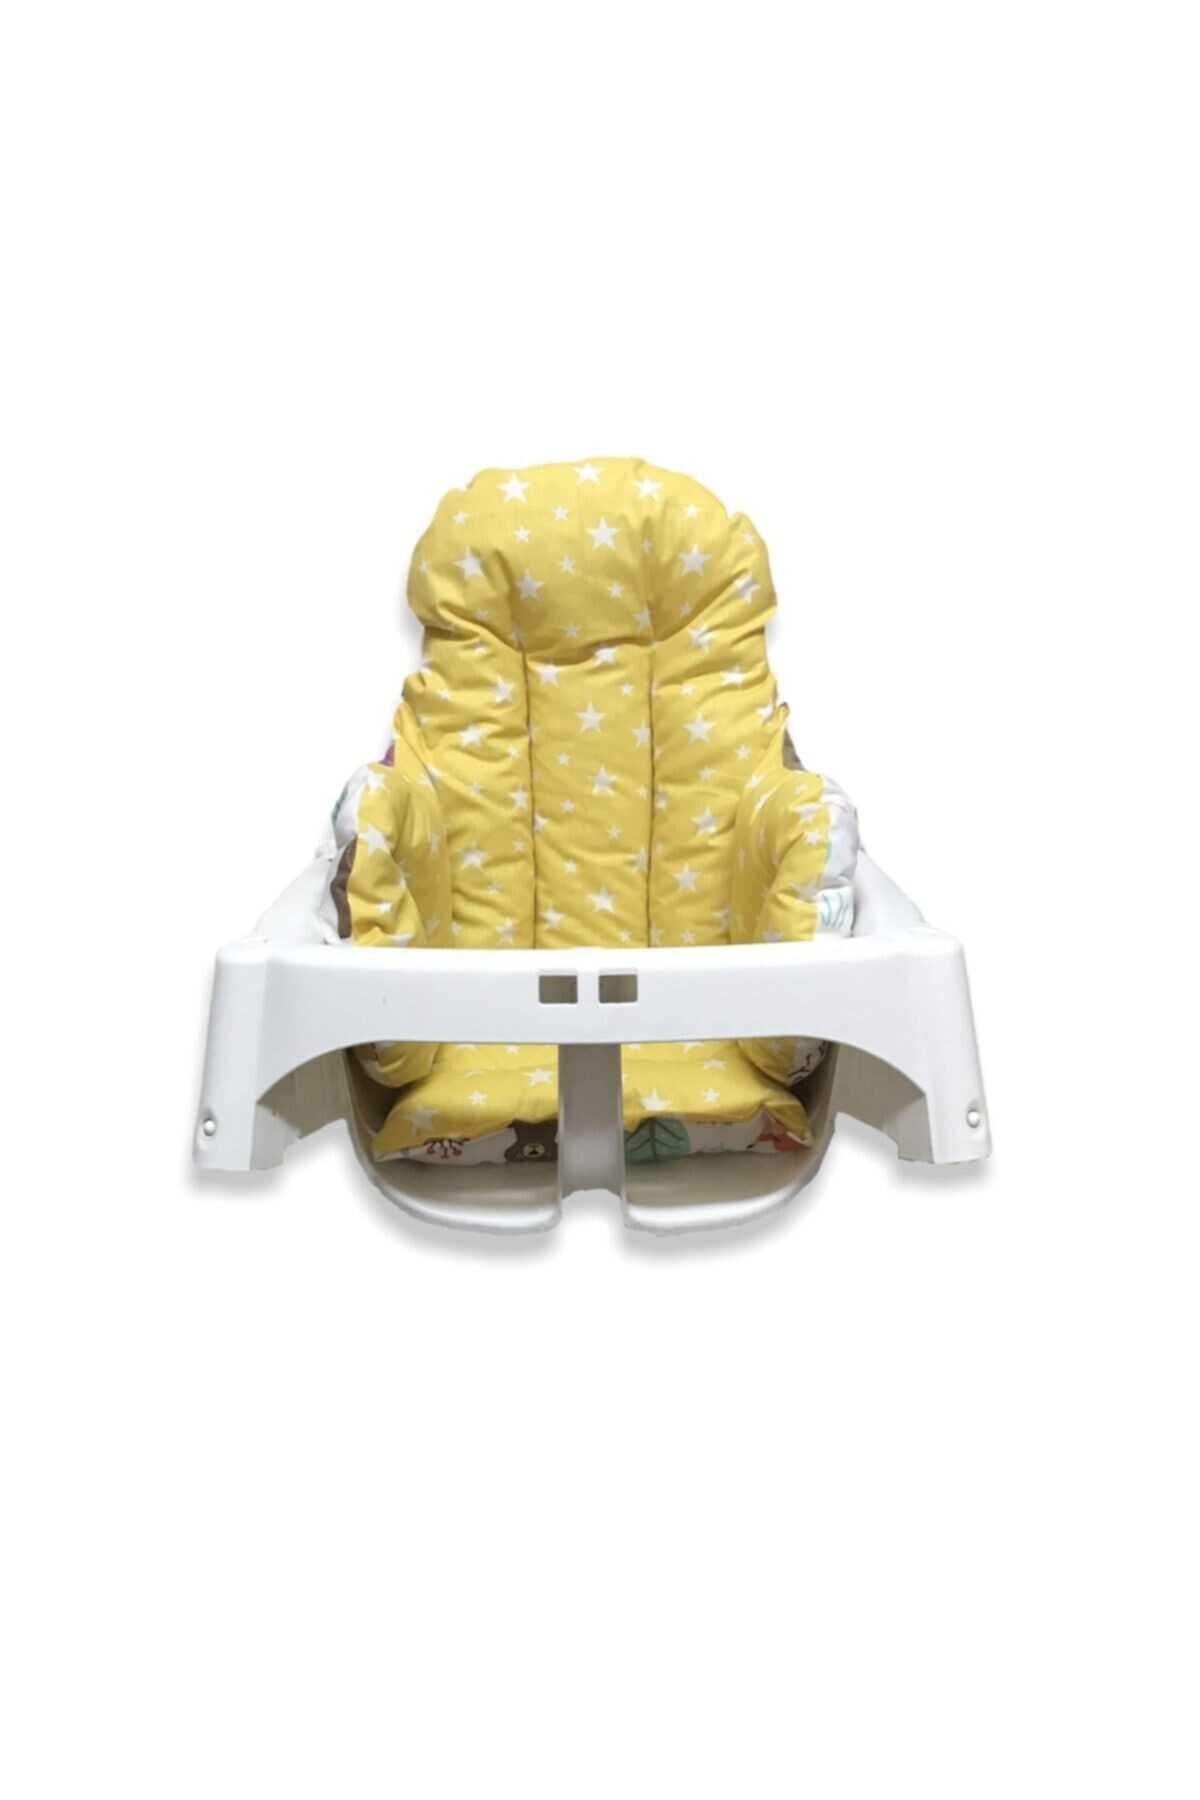 کوسن صندلی کودک دو رو طرح دار سفید زرد برند Bebek Özel 